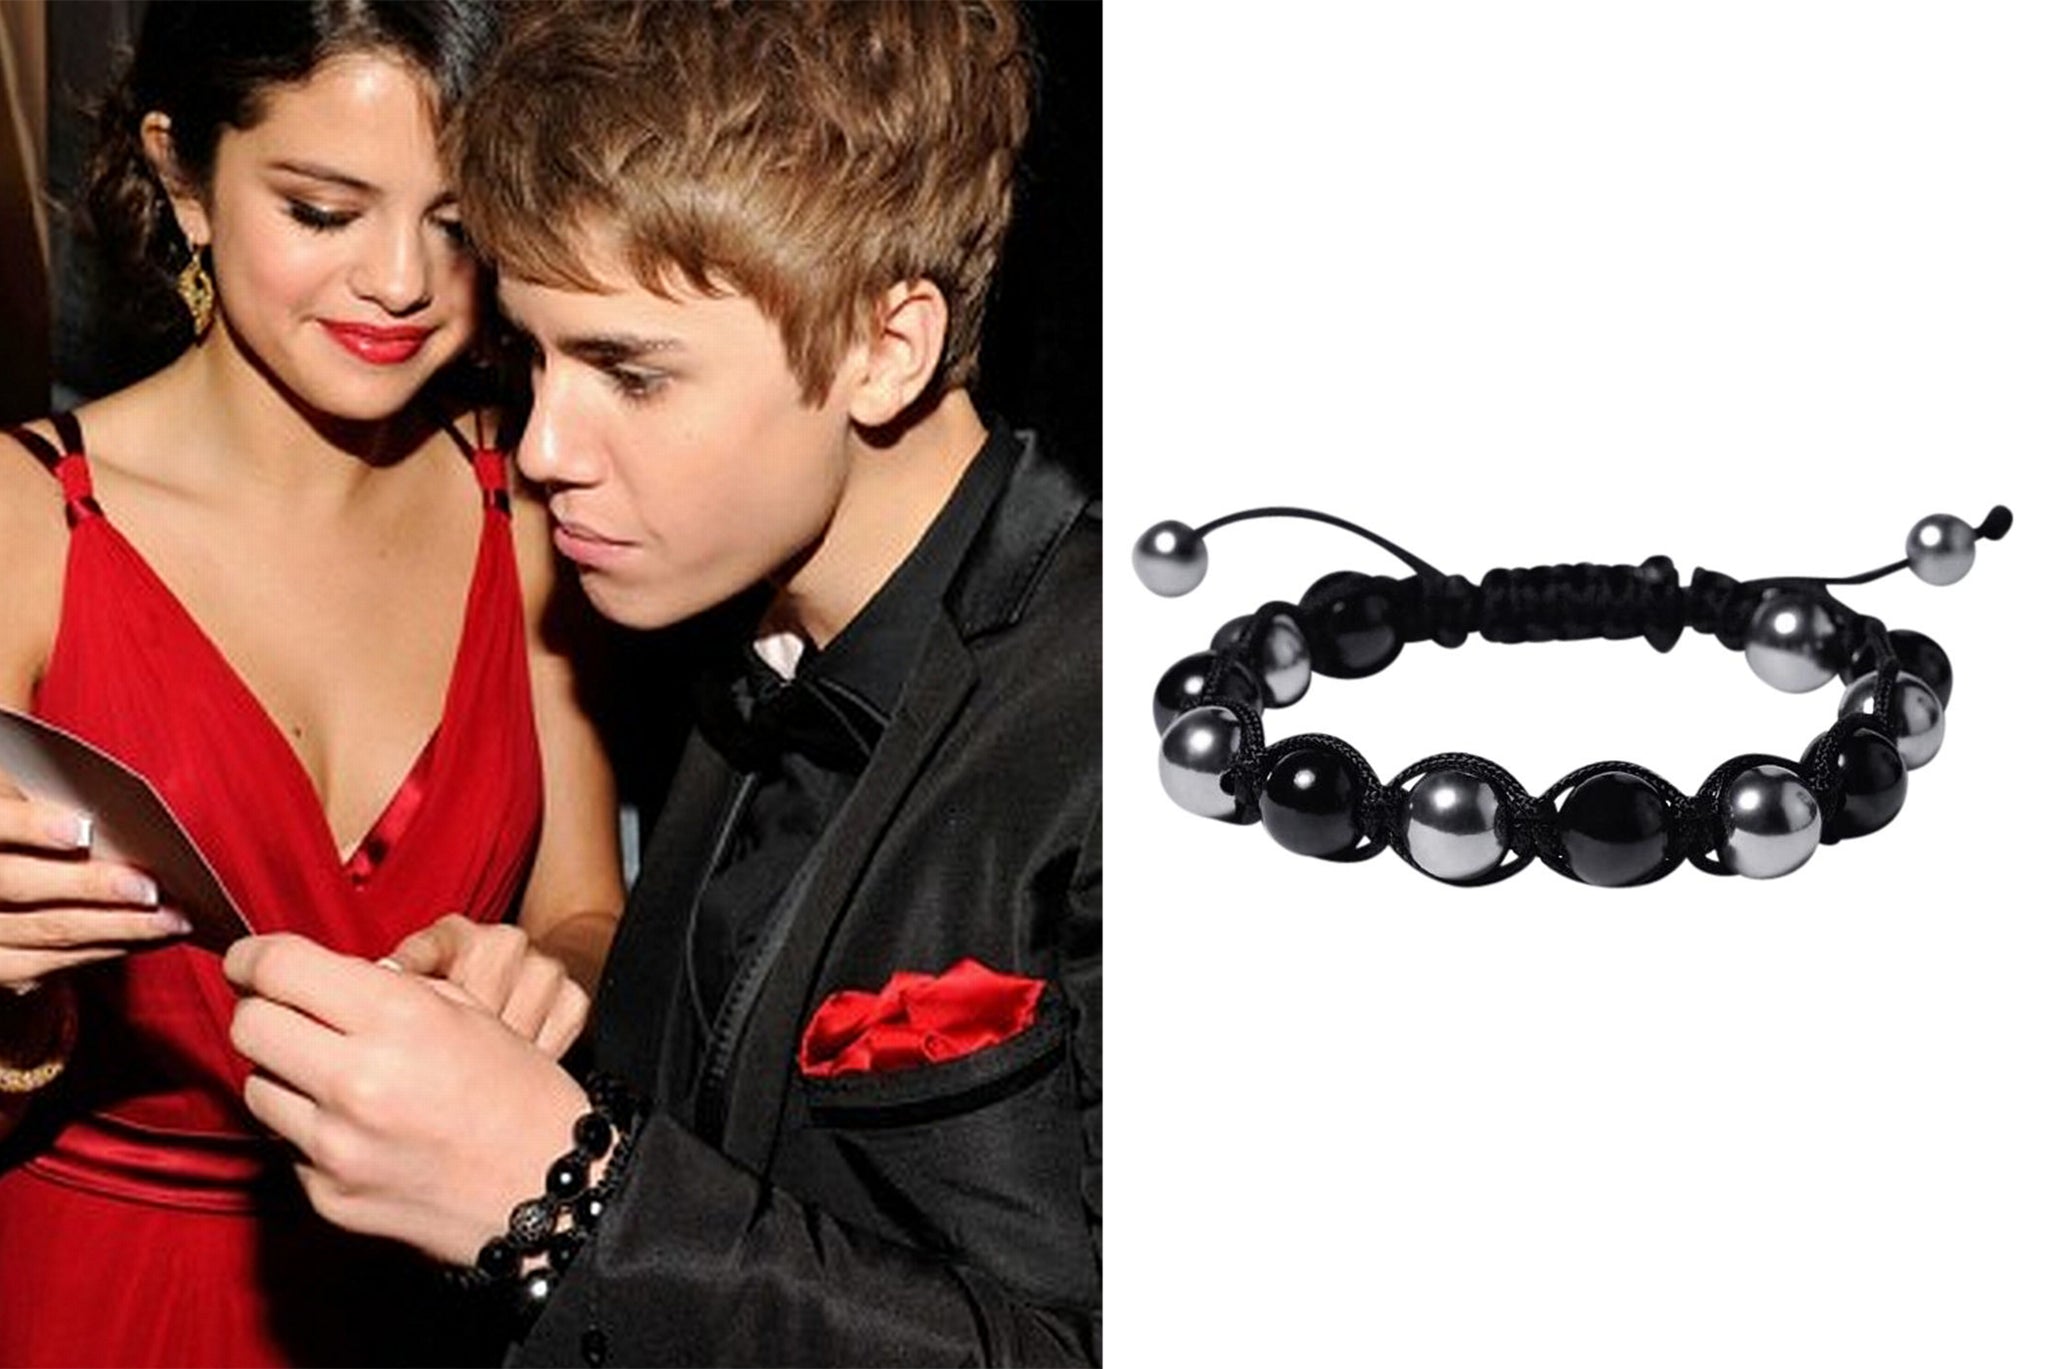 Bracelet Justin Bieber on Sale, 50% OFF | www.ingeniovirtual.com